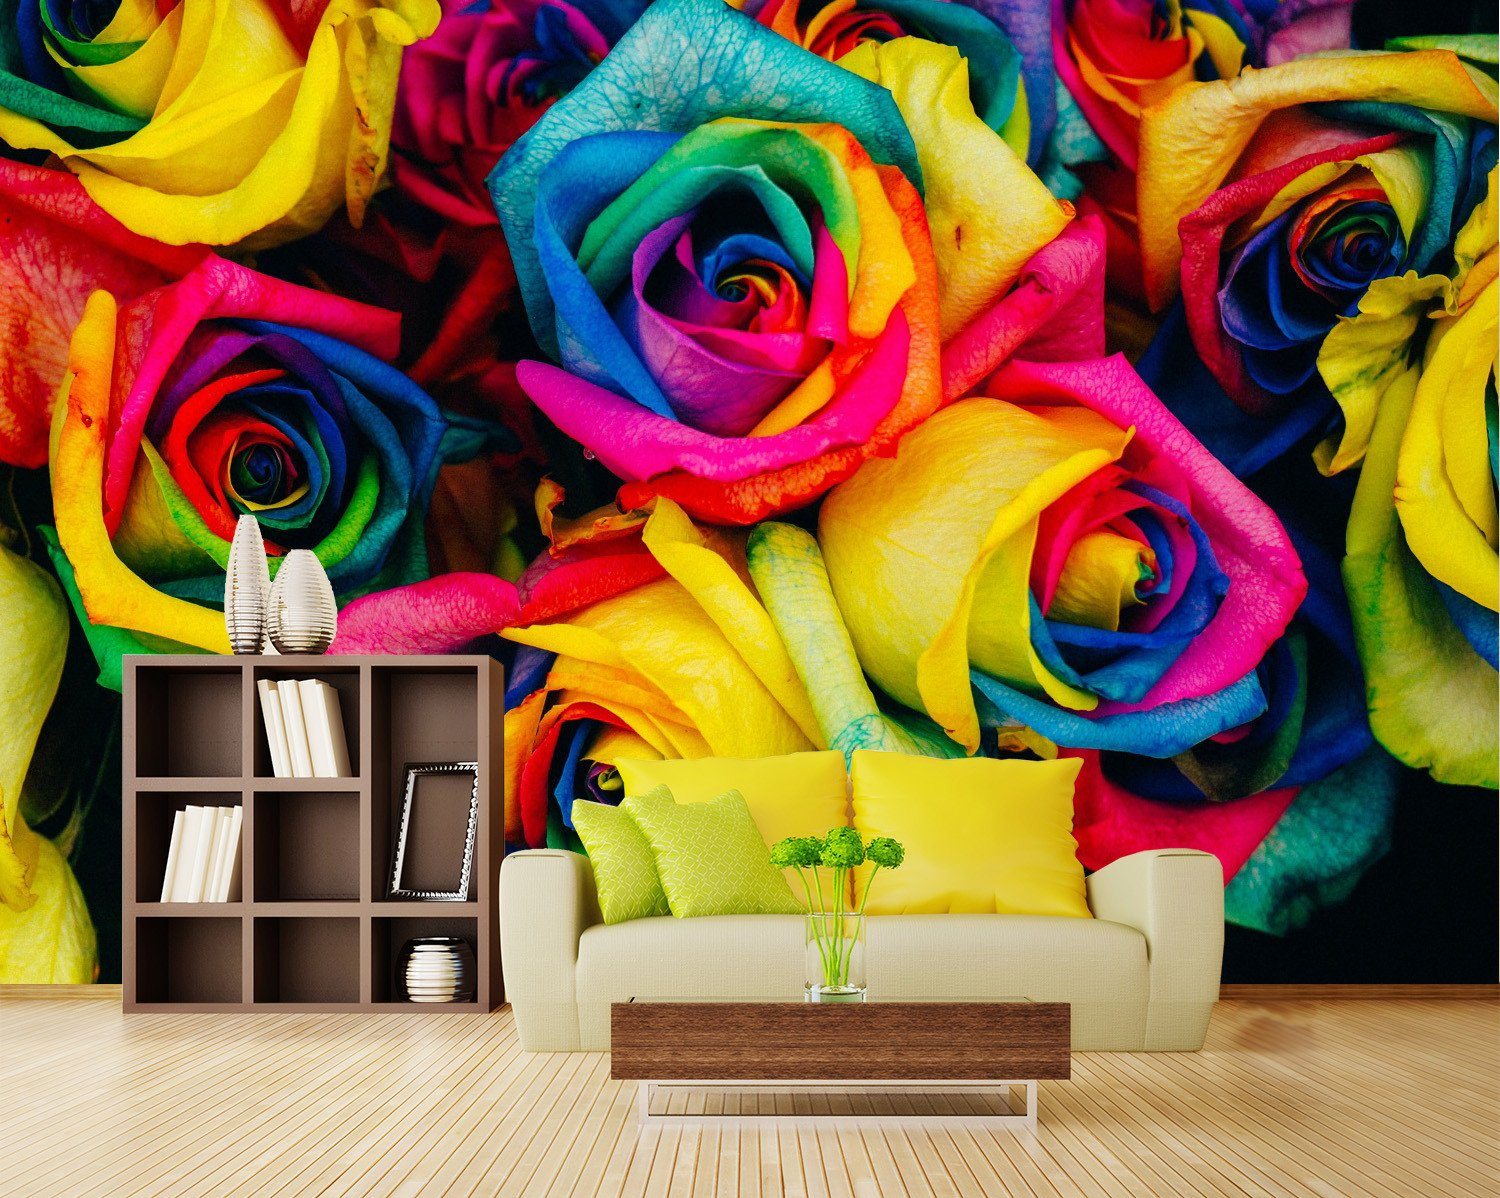 3D Colorful Painting Rose 567 Wallpaper AJ Wallpaper 